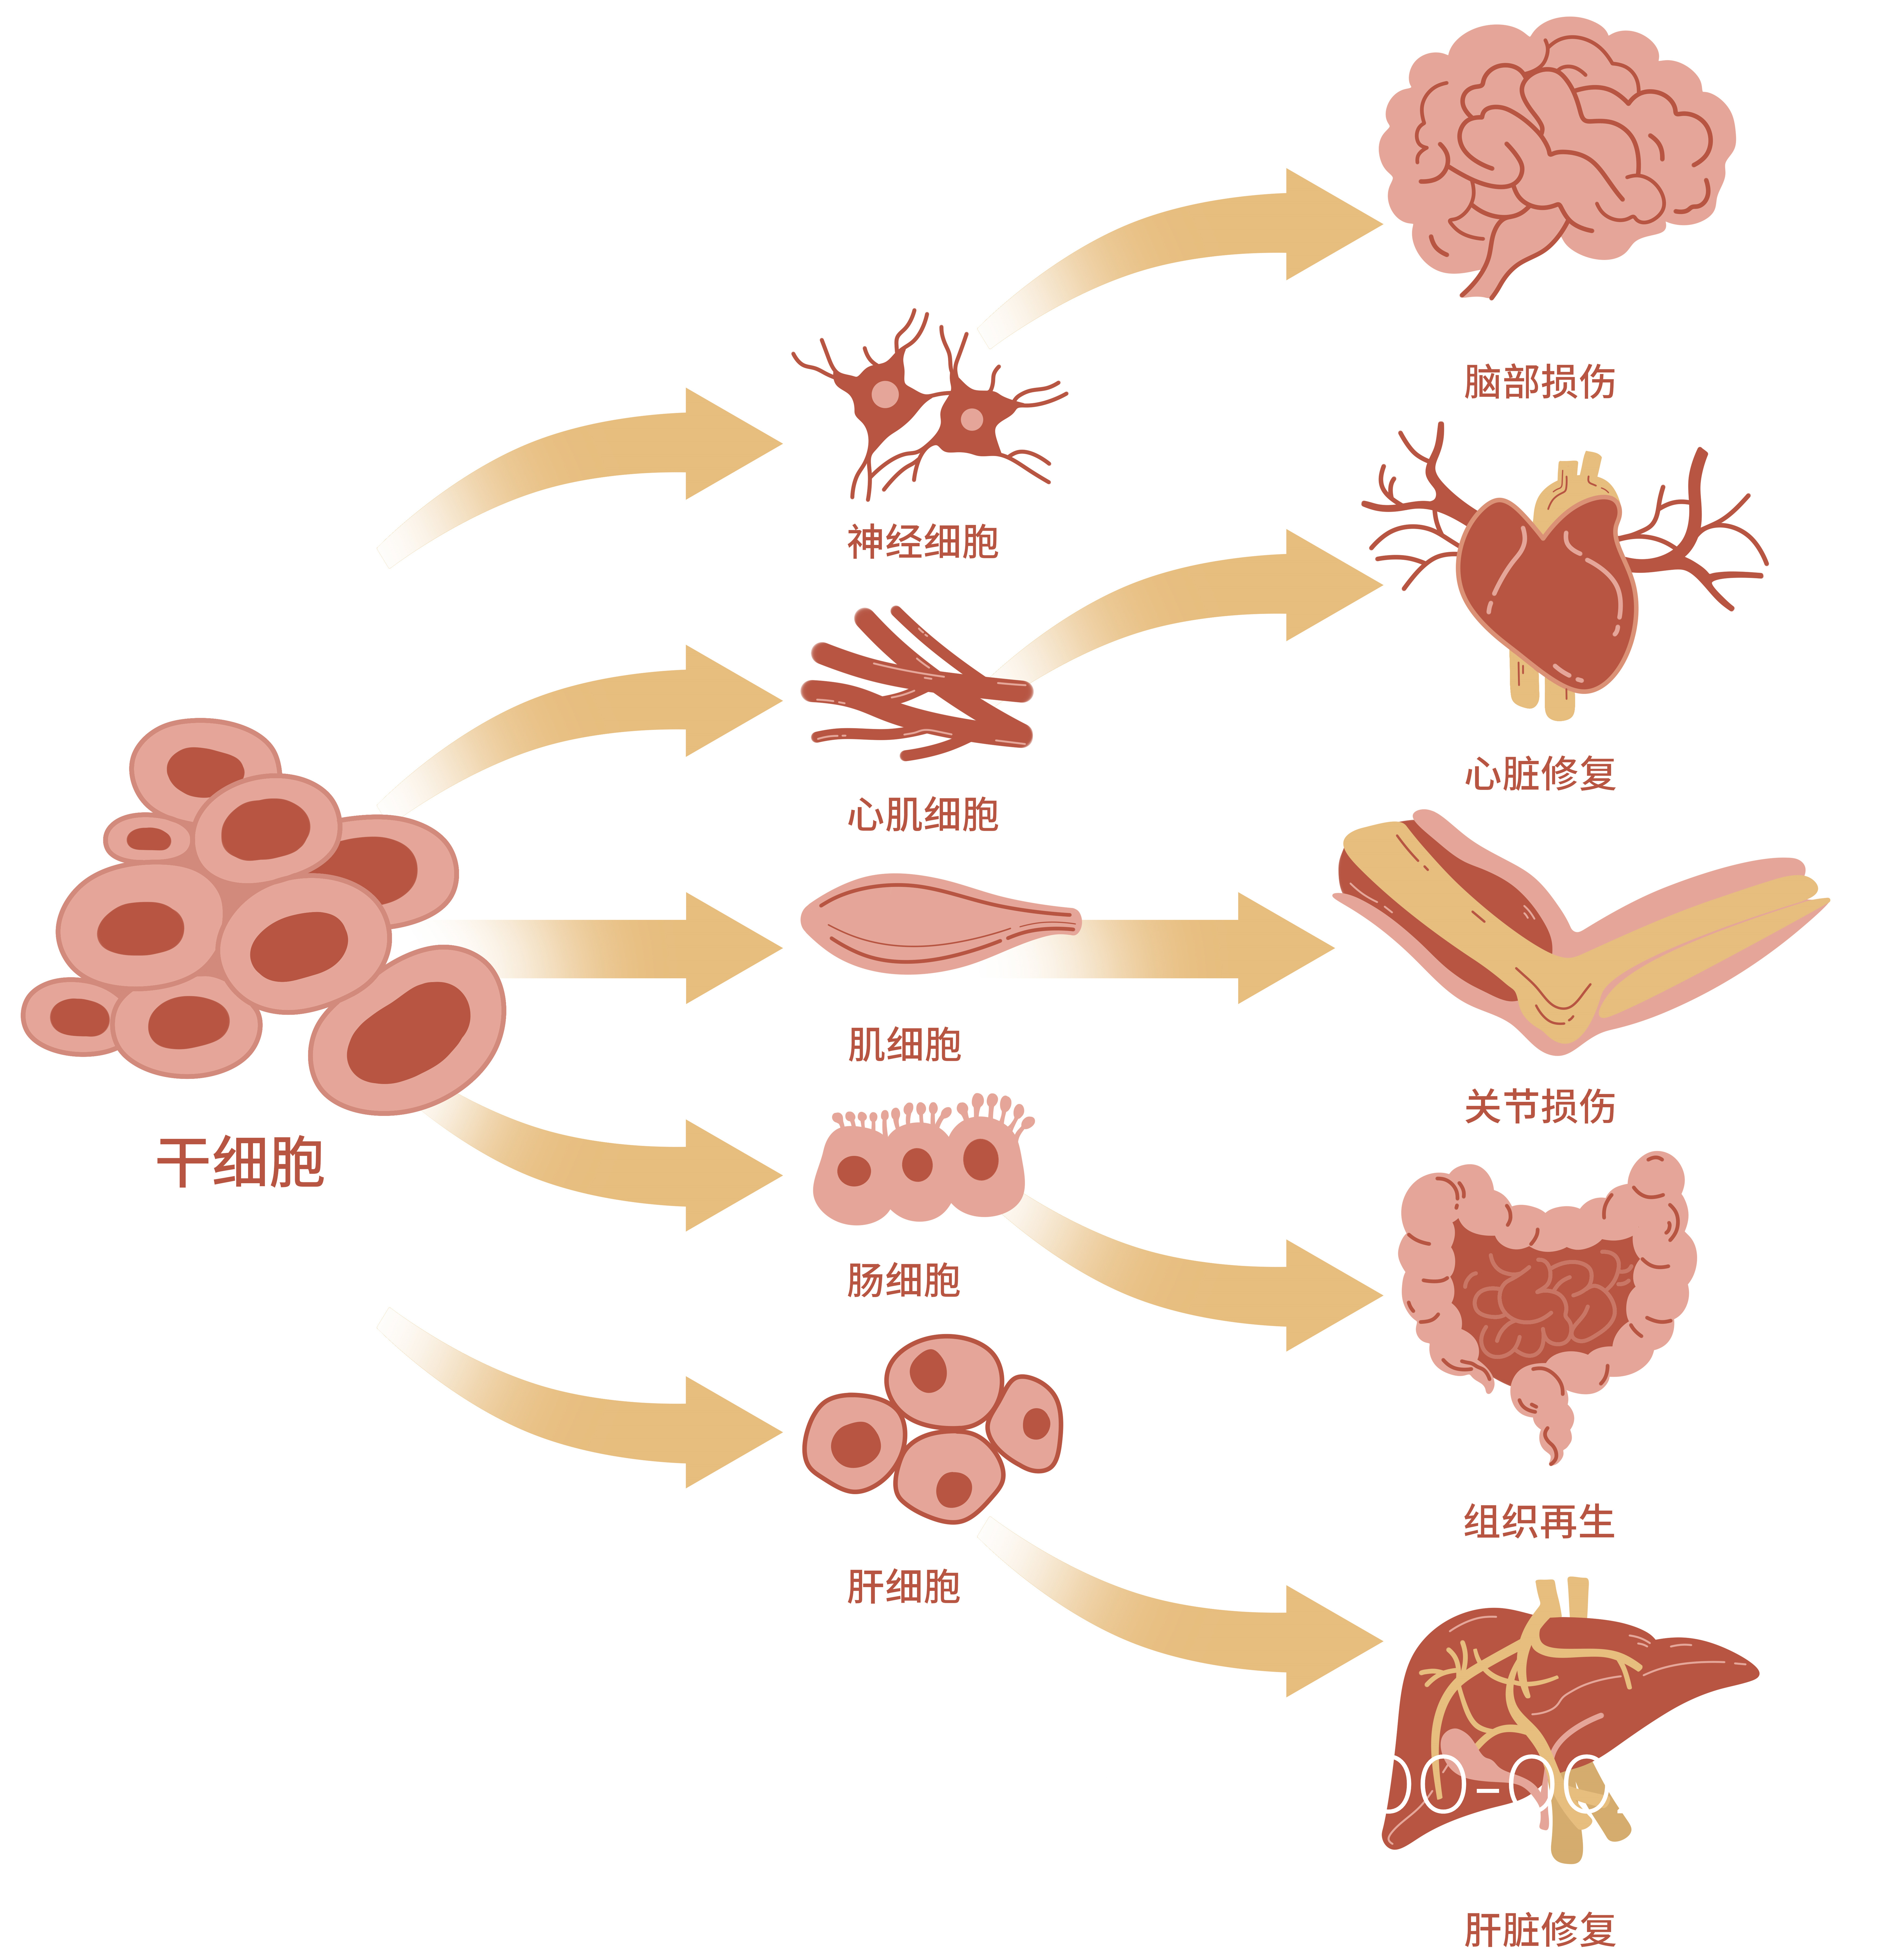 NK细胞疗法的优势是什么